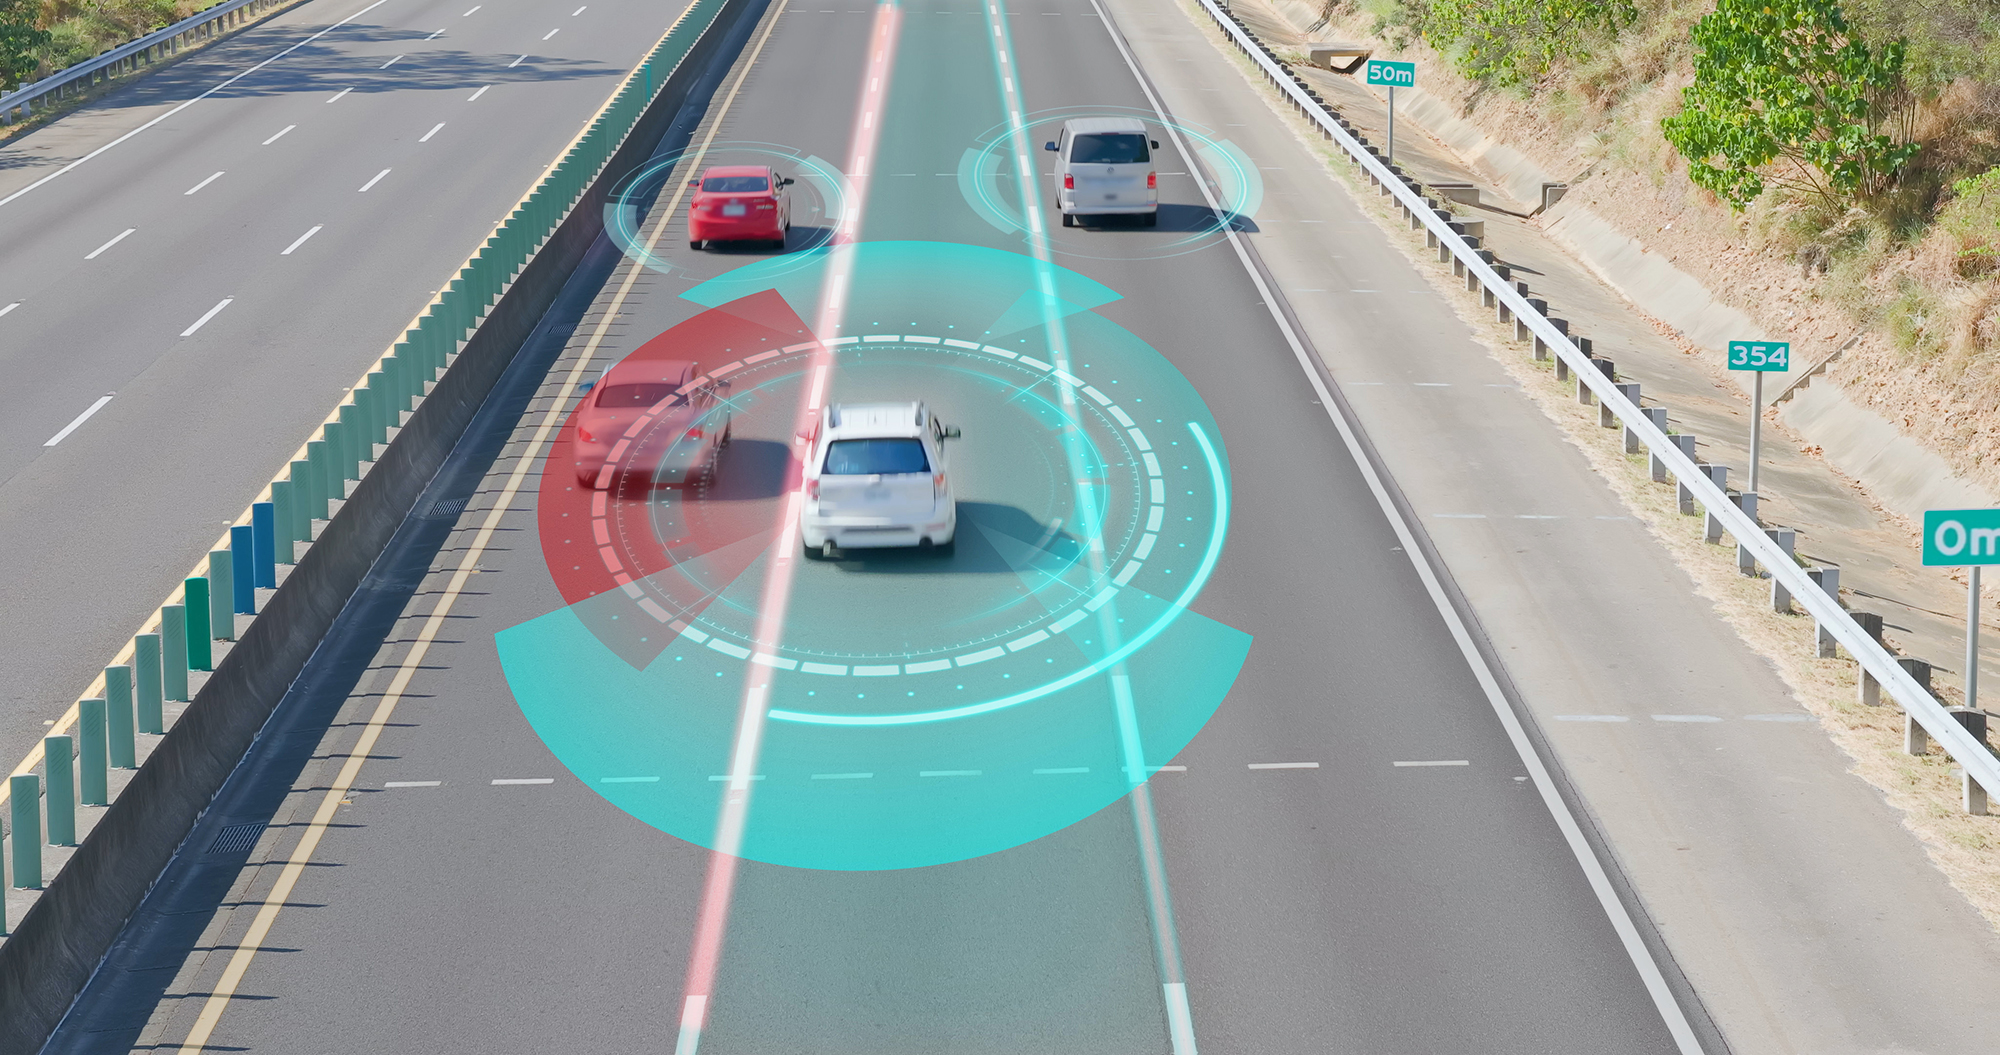 tecnologia LiDAR che monitora la distanza tra i veicoli misurando il tempo impiegato dalla luce riflessa per tornare al sensore.